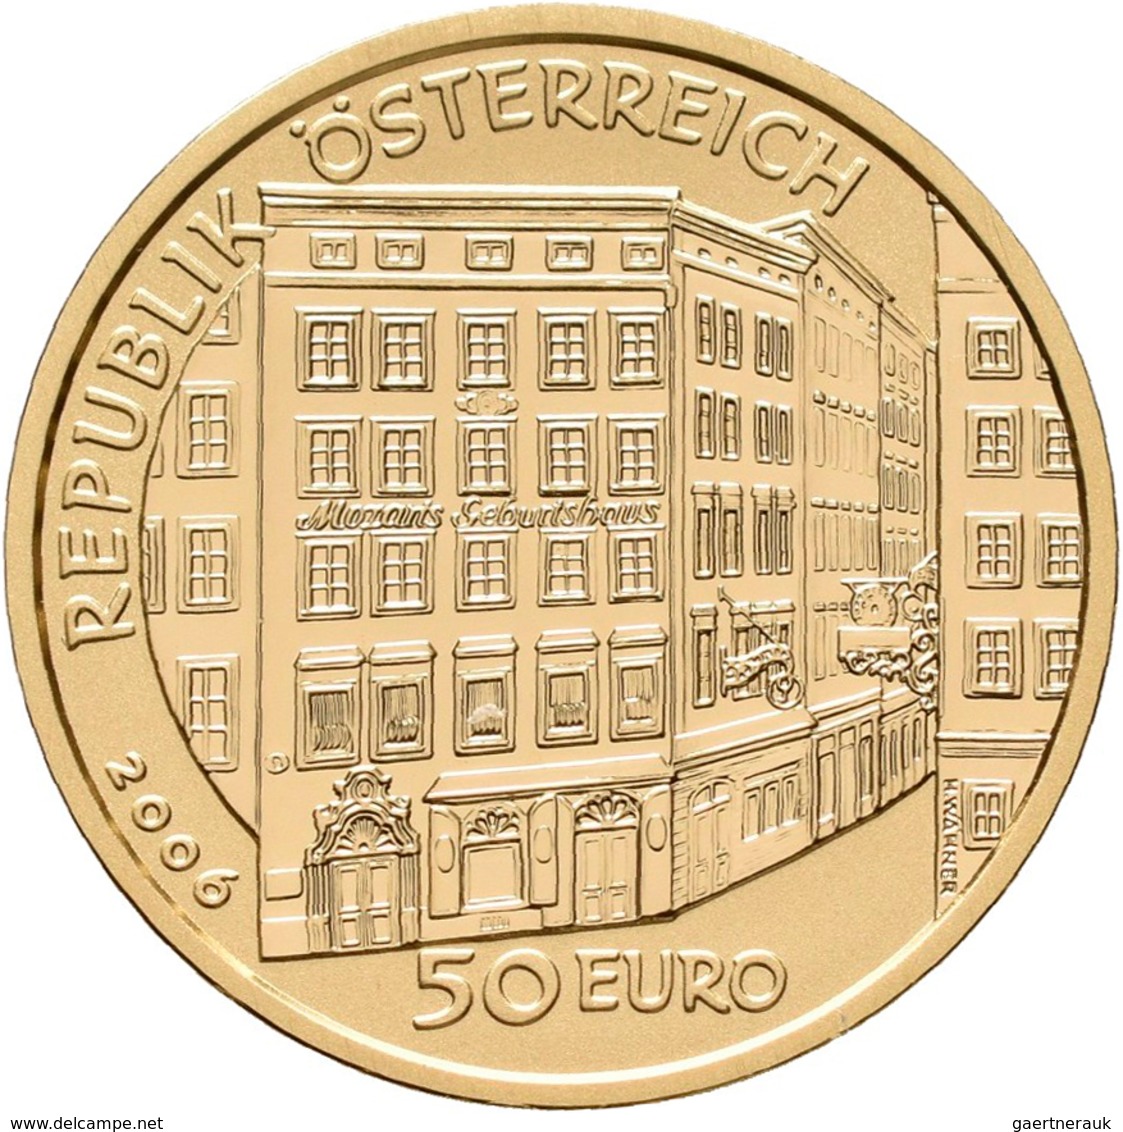 Österreich - Anlagegold: 50 Euro 2006 Grosse Komponisten - Wolfgang Amadeus Mozart. KM# 3130, Friedb - Austria